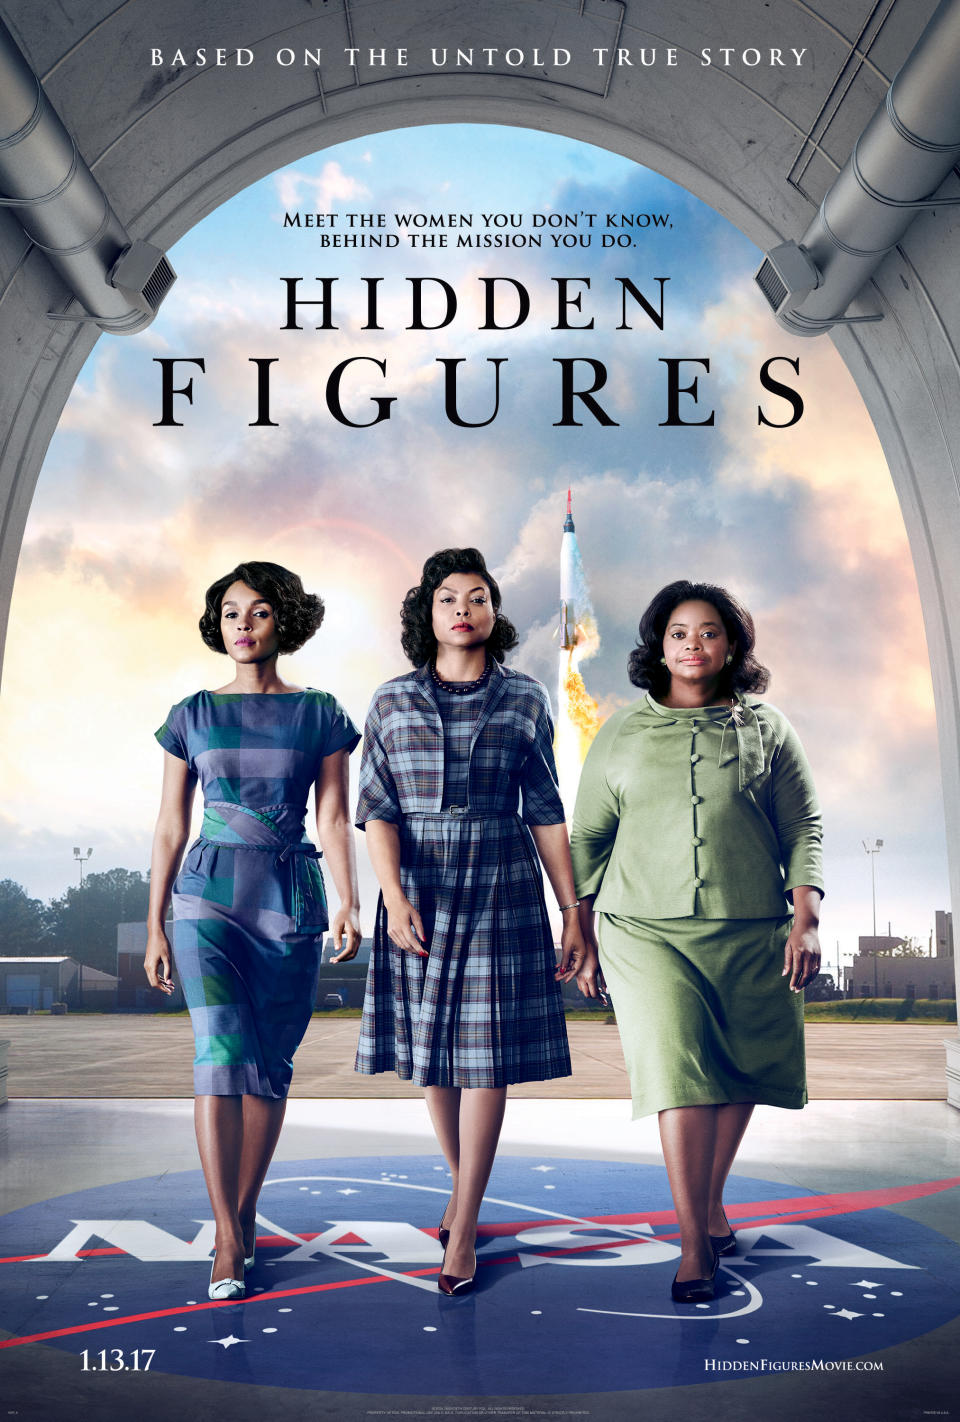 'Hidden Figures' Explores NASA and Civil Rights History